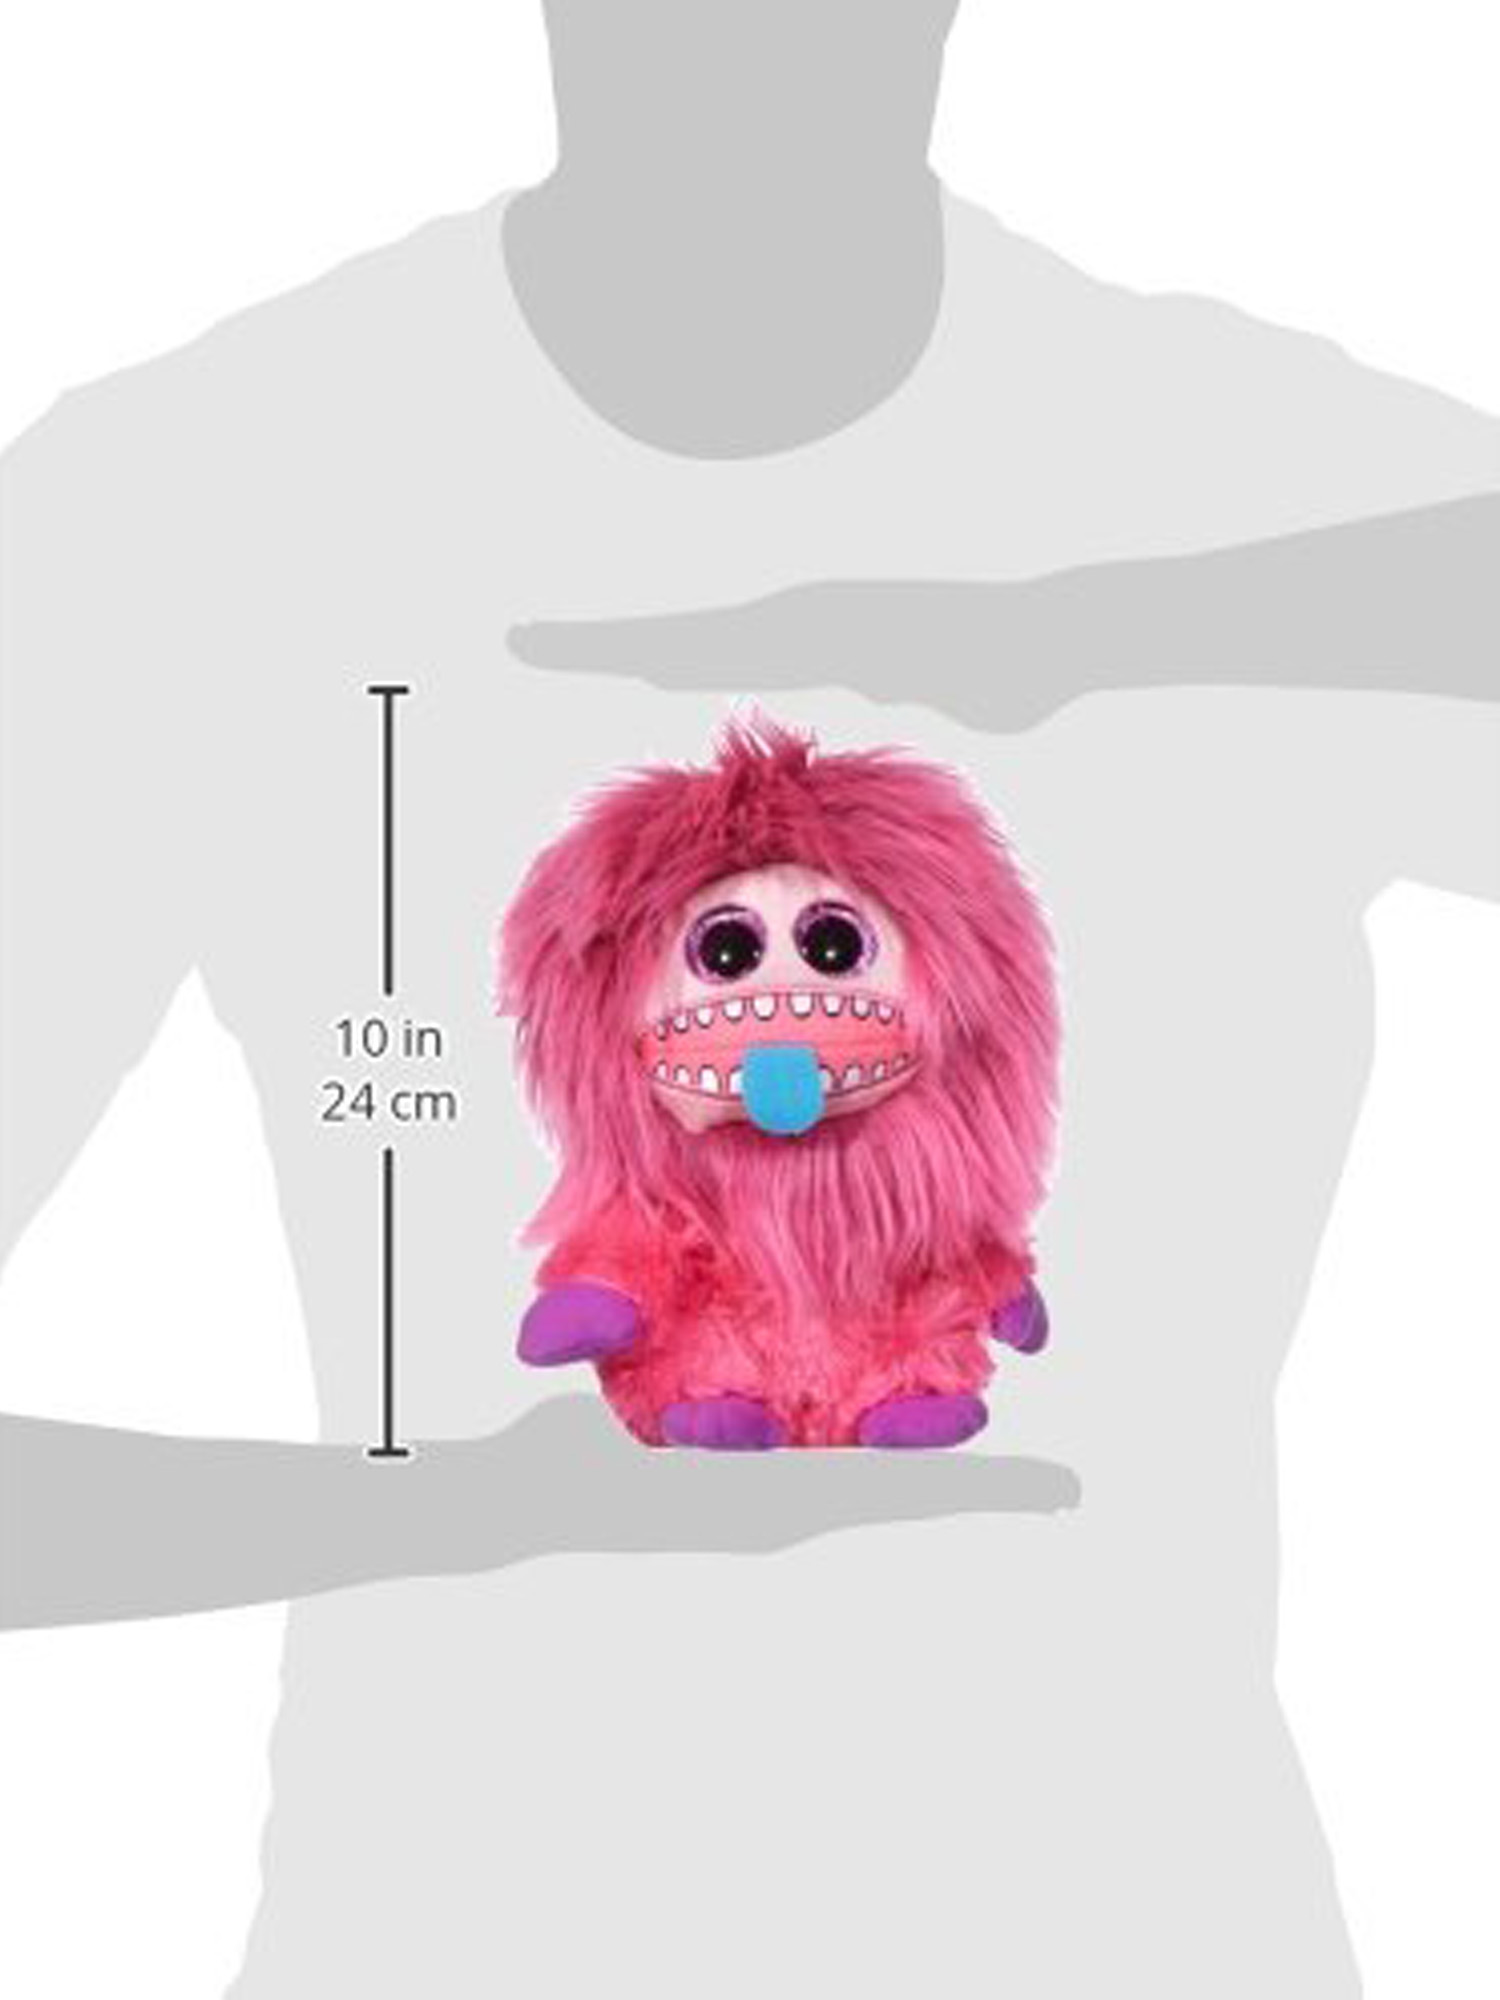 Frizzys ZeeZee Plush Toy & Bendable Monster Character Bundle Set - image 2 of 2